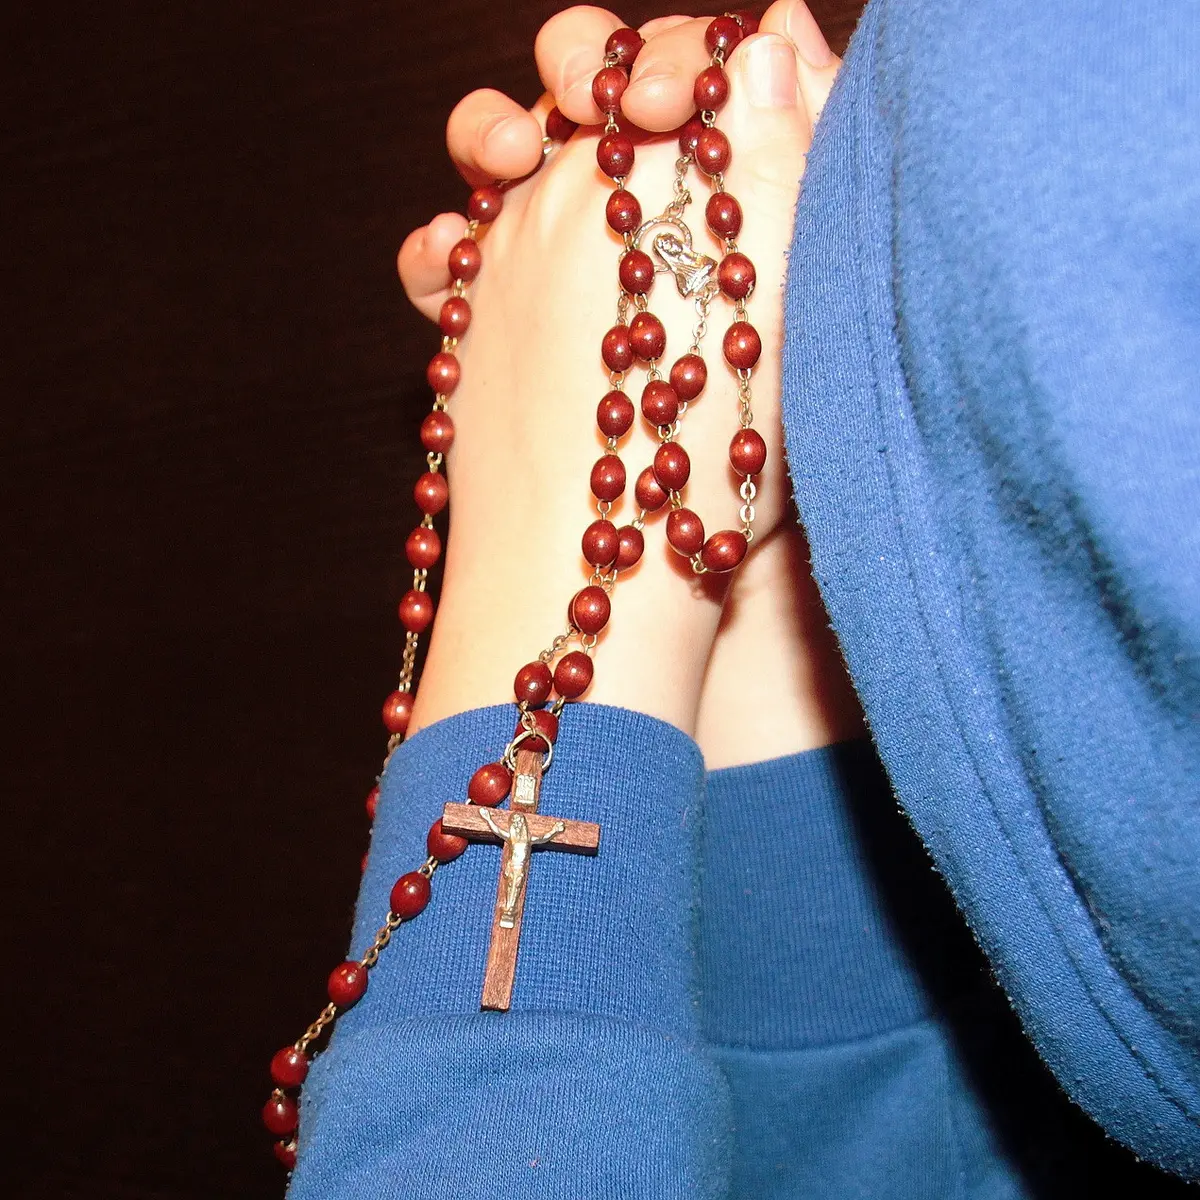 Doa Aku Percaya Agama Katolik Versi Panjang dan Pendek Lengkap di